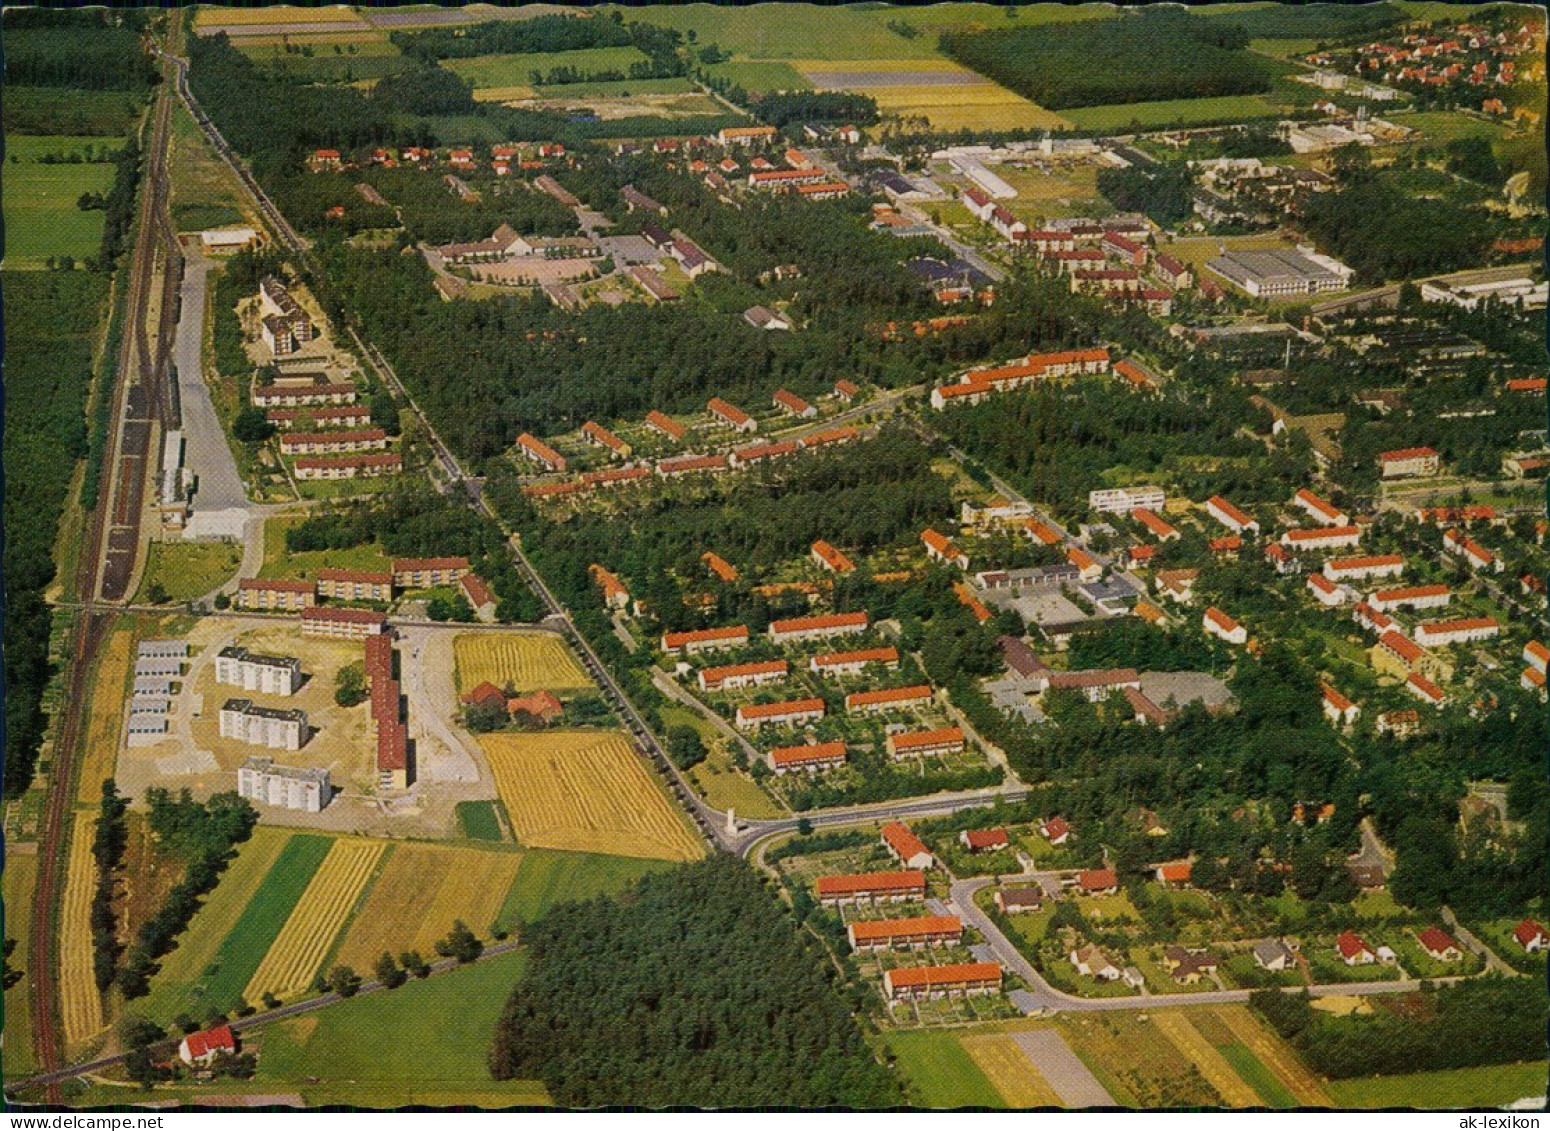 Ansichtskarte Espelkamp Luftbild Neubausiedlung 1972 - Espelkamp